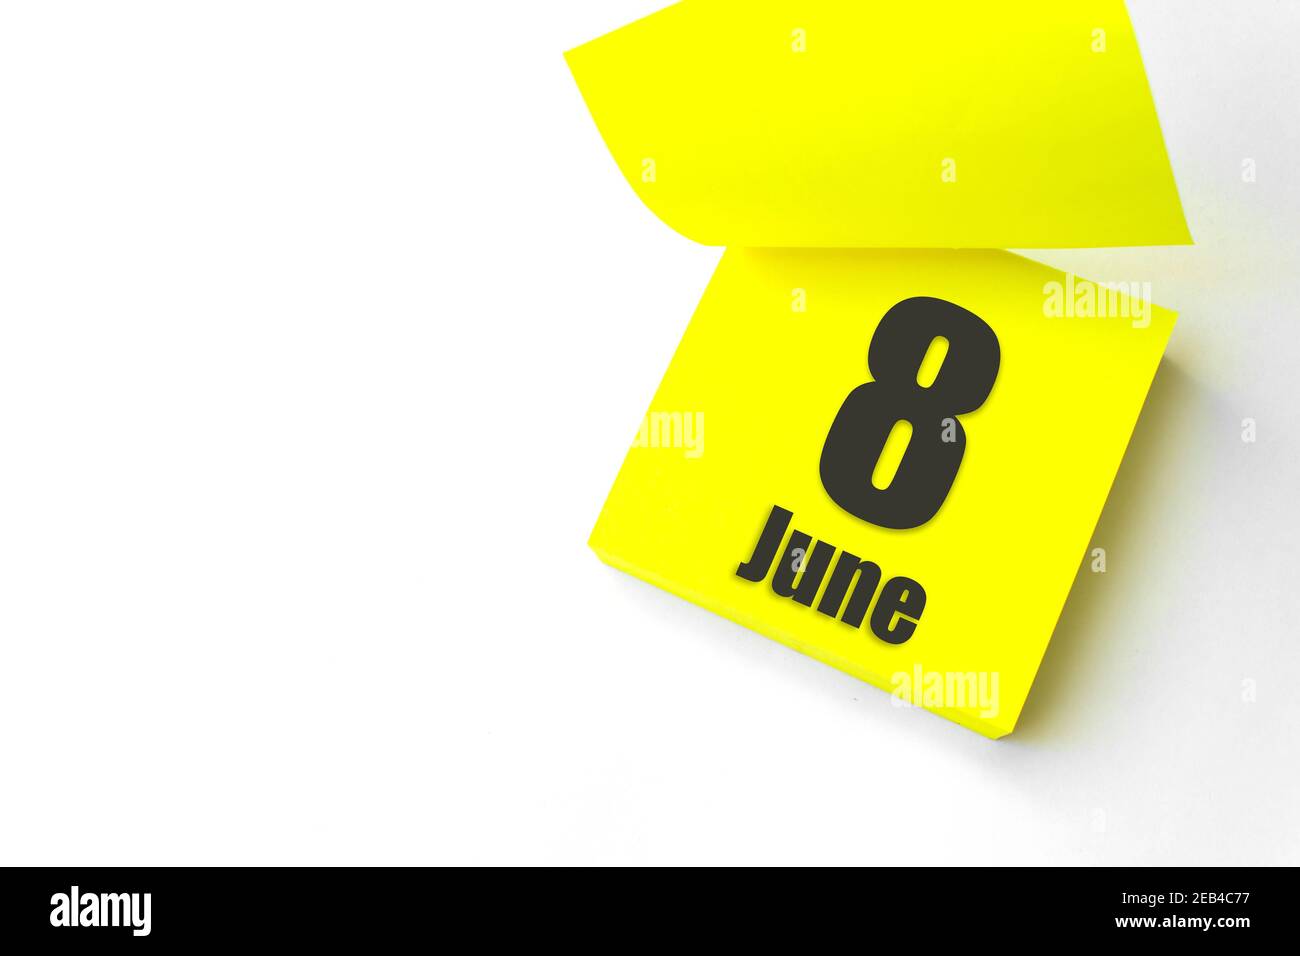 Juni 8th. Tag 8 des Monats, Kalenderdatum. Nahaufnahme leeres gelbes Papier Erinnerung Haftnotiz auf weißem Hintergrund. Sommer Monat, Tag des Jahres Konzept Stockfoto